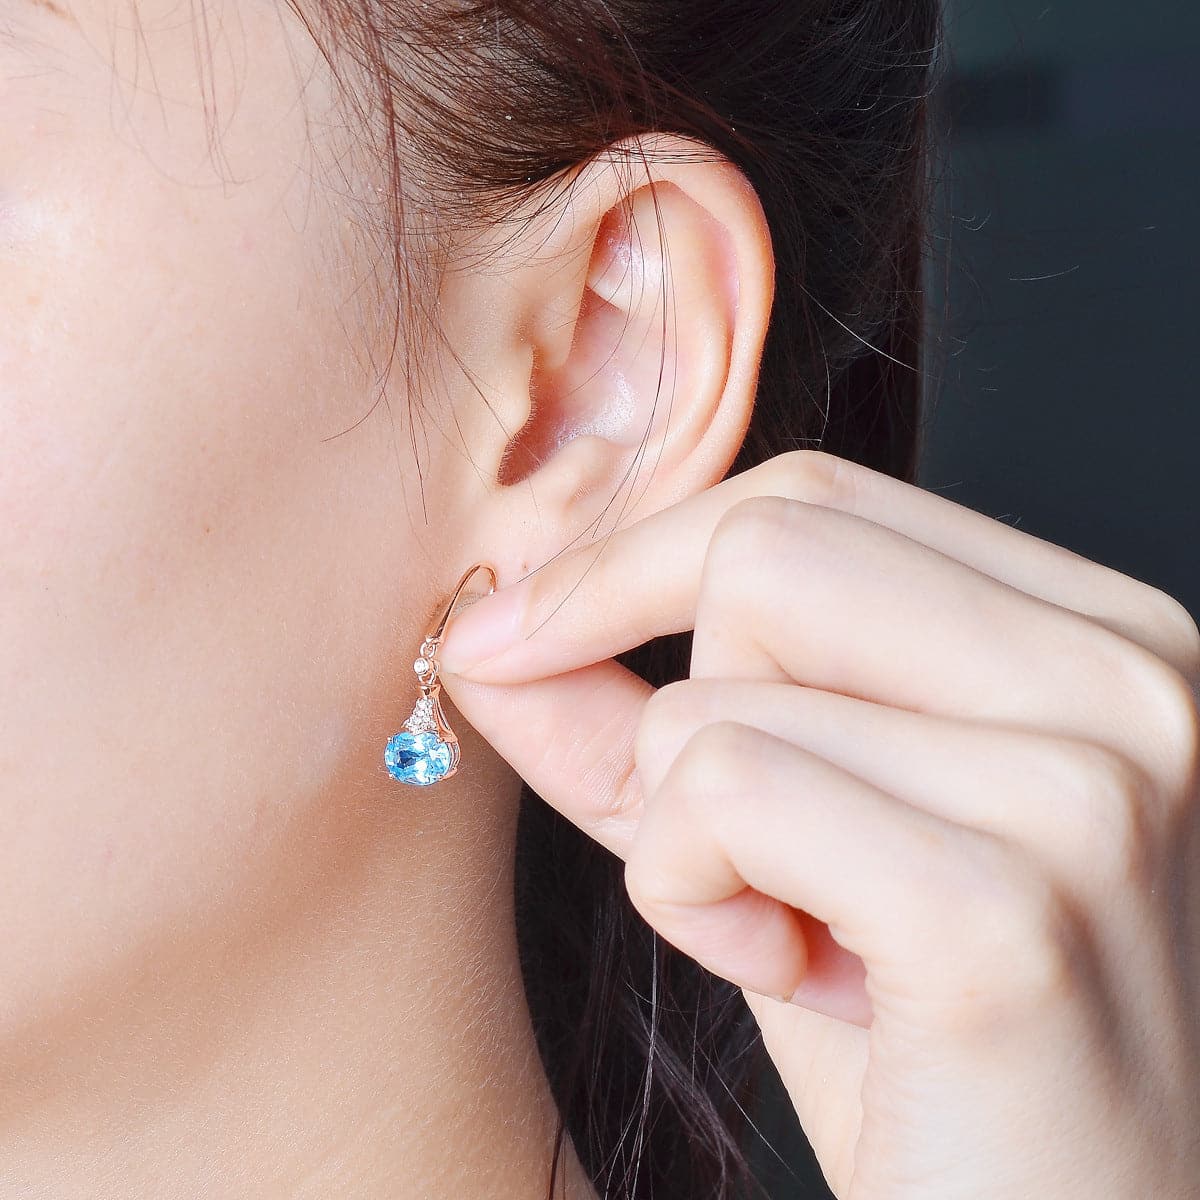 Sky Blue Crystal Oval Drop Earrings